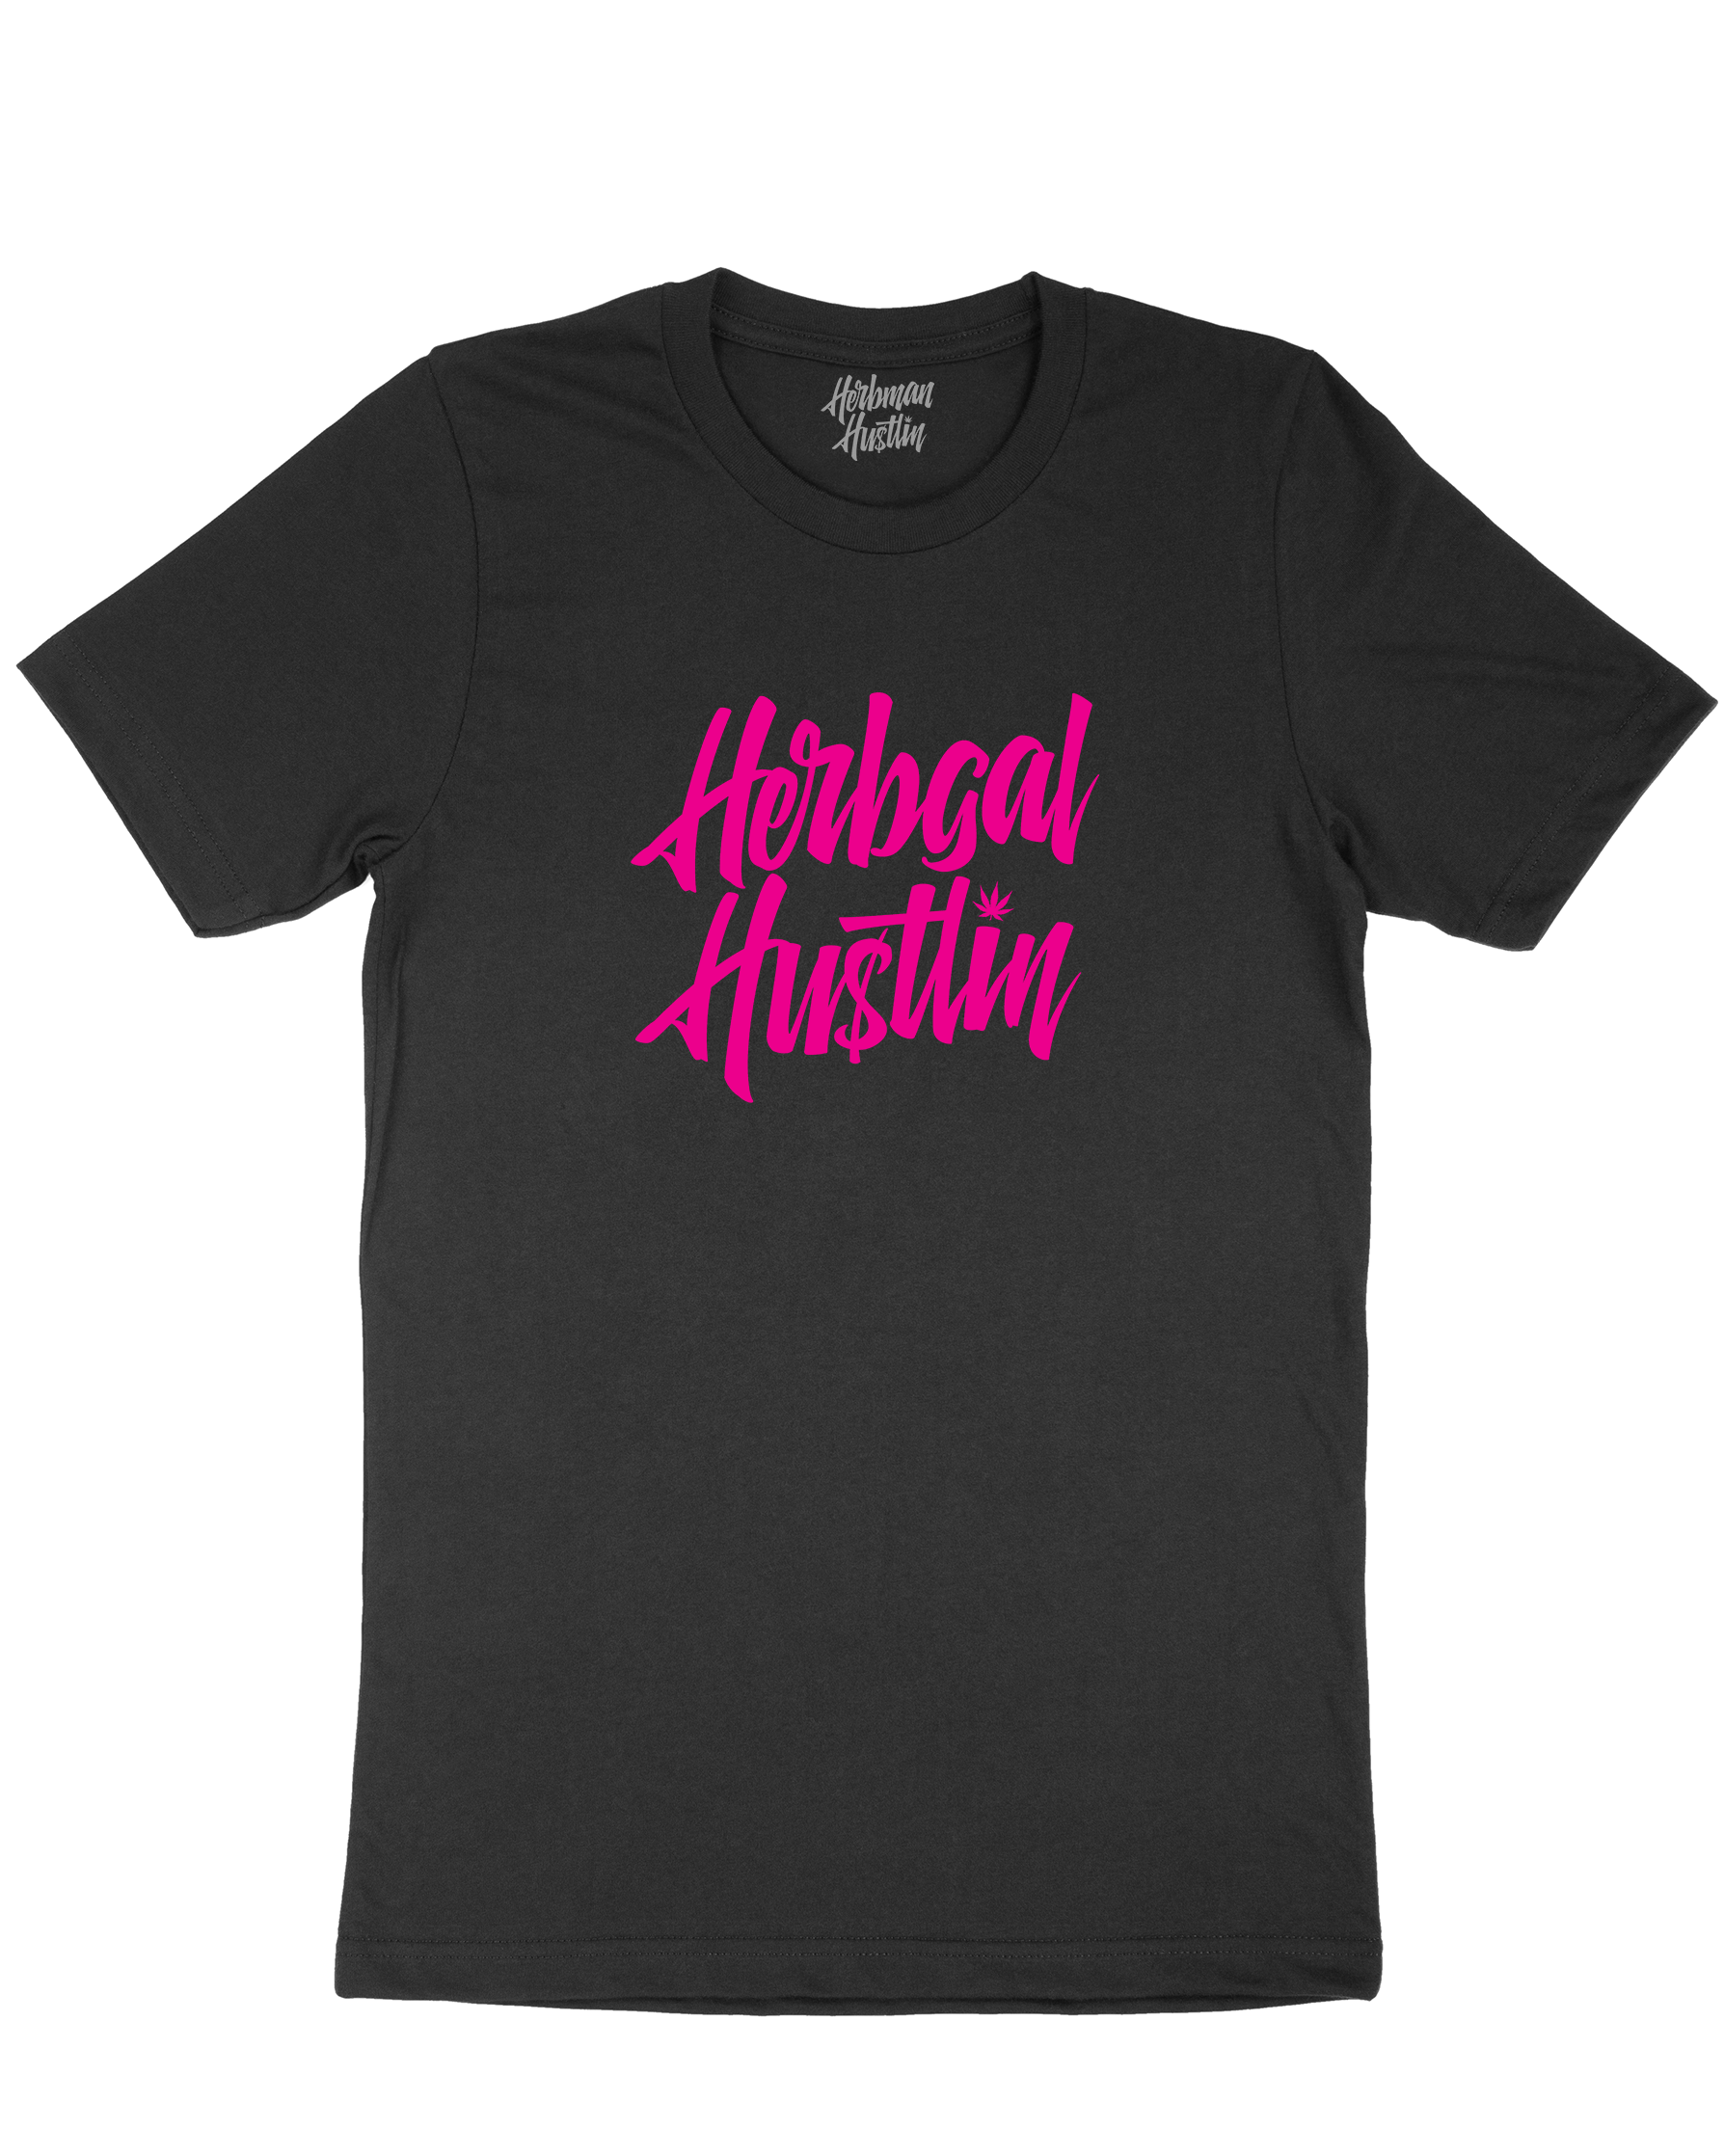 Herbgal Hustlin Script Front Print Tee - Black/Pink